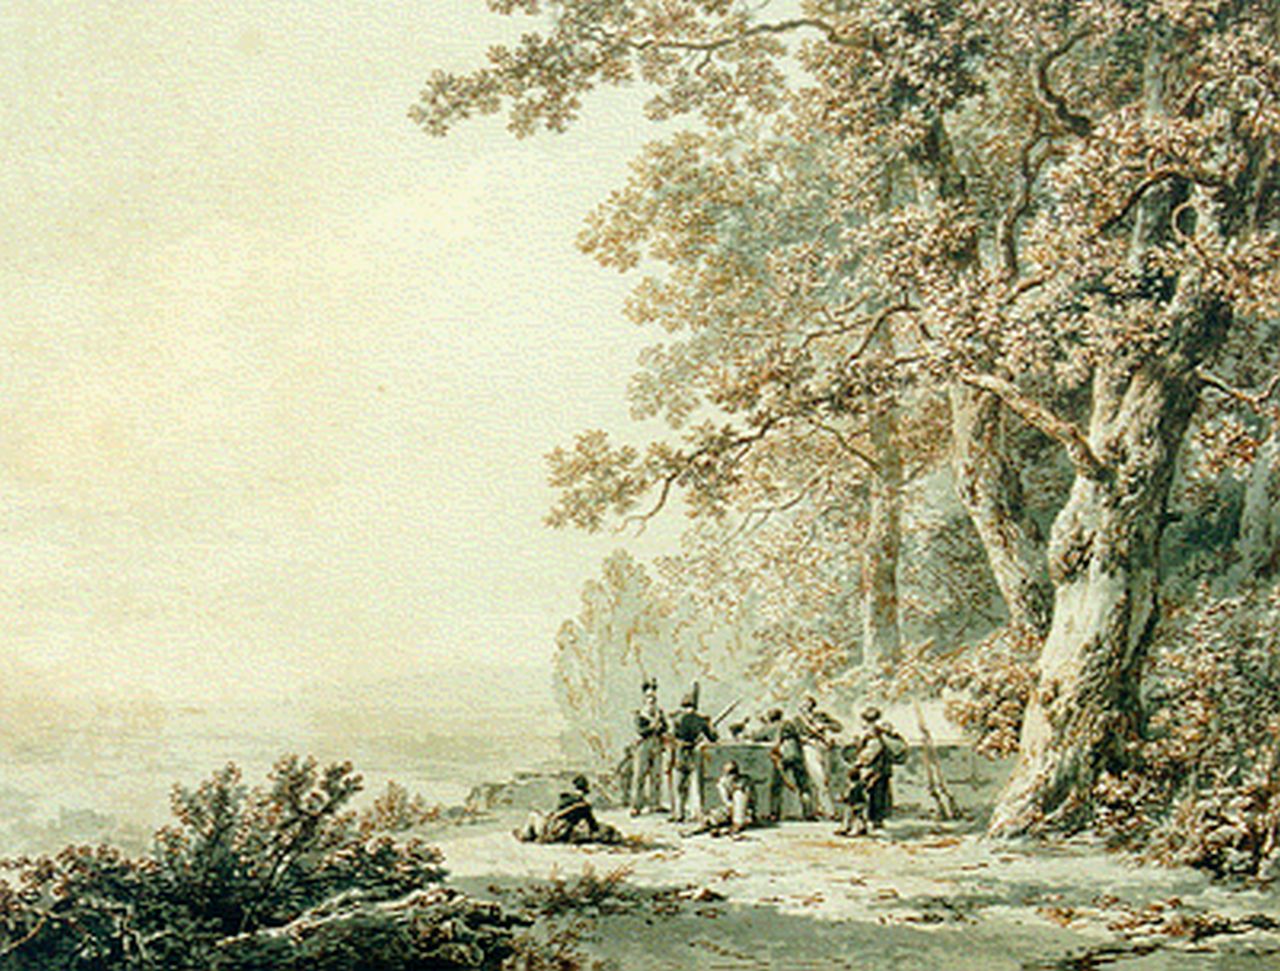 Koekkoek B.C.  | Barend Cornelis Koekkoek, Panoramisch landschap met militairen, sepia op papier 25,2 x 32,7 cm, gesigneerd rechtsonder en gedateerd 1830